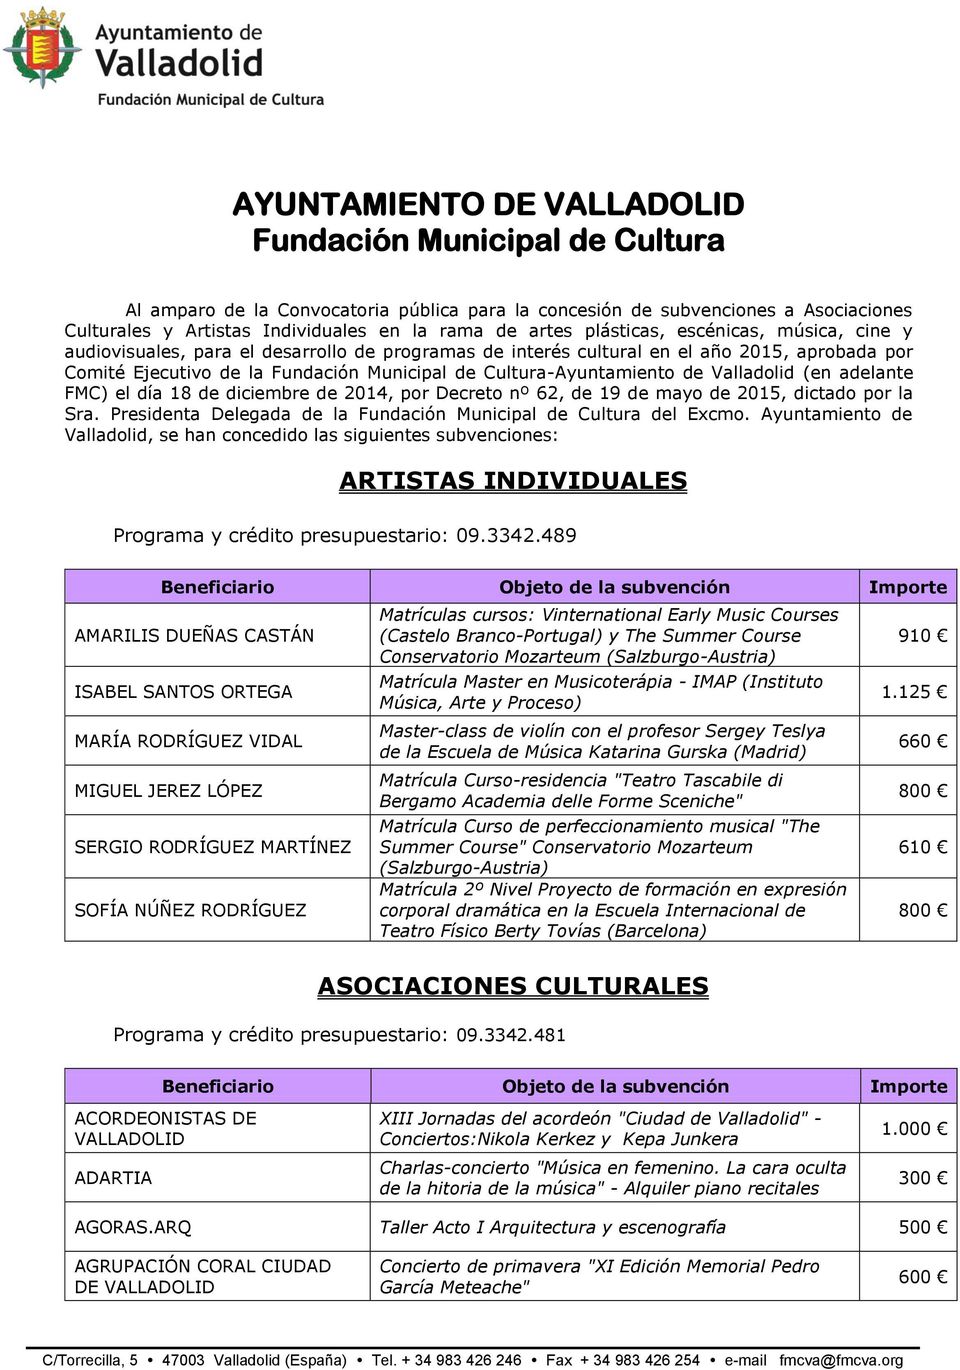 Valladolid (en adelante FMC) el día 18 de diciembre de 2014, por Decreto nº 62, de 19 de mayo de 2015, dictado por la Sra. Presidenta Delegada de la Fundación Municipal de Cultura del Excmo.